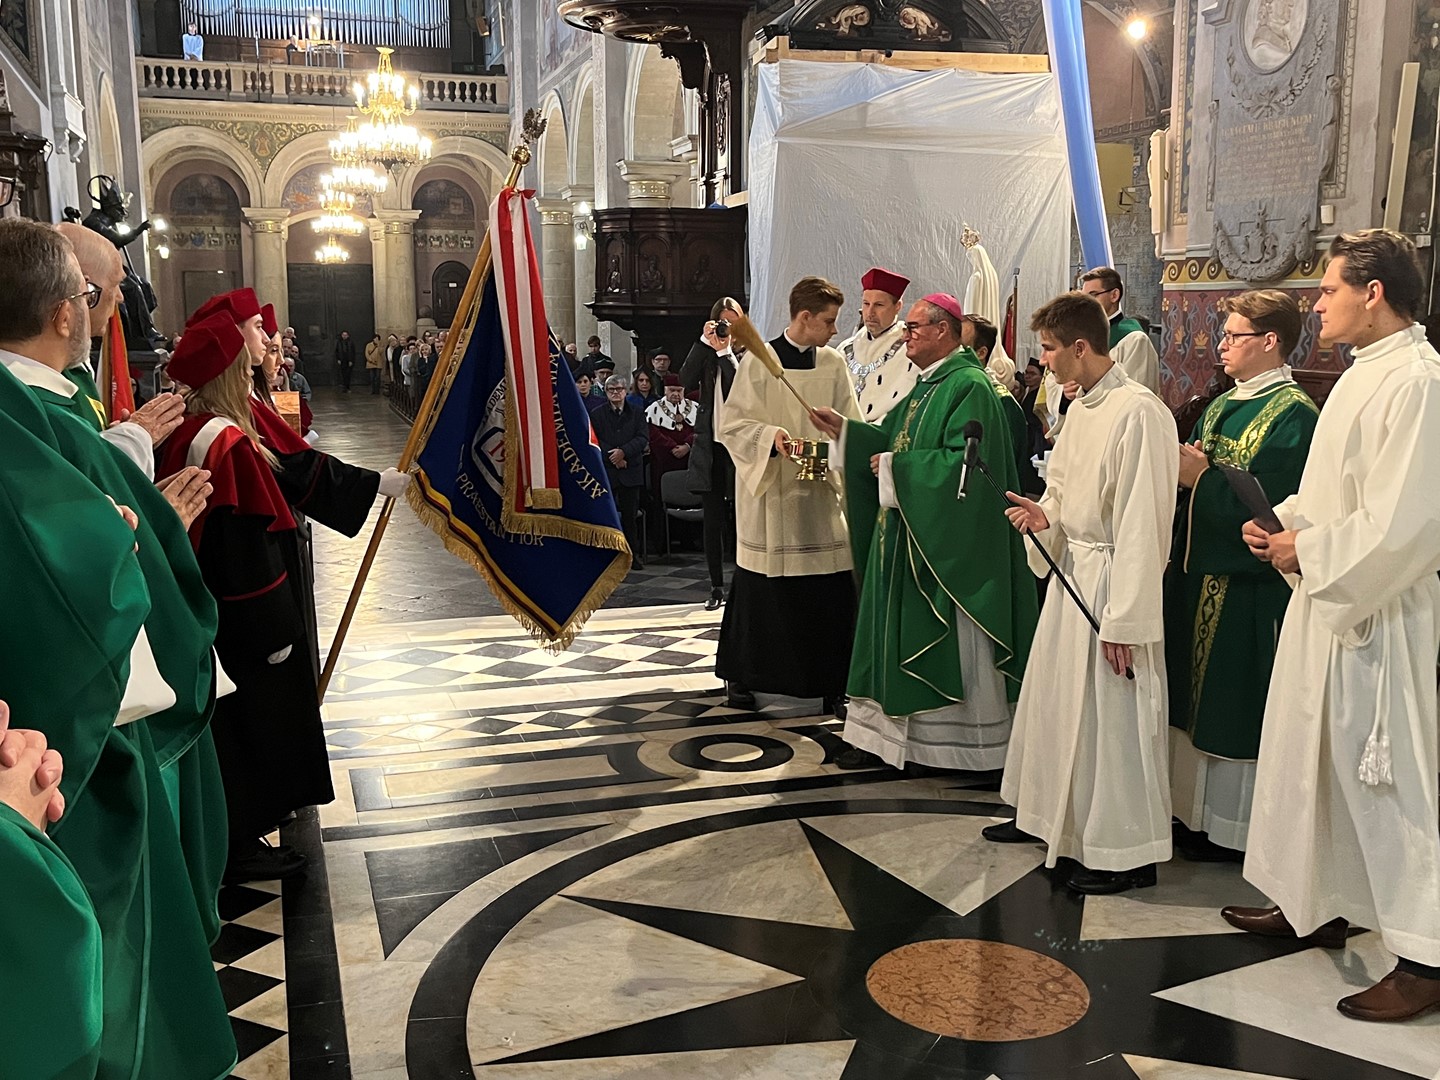 W Dniu Papieskim w Płocku Eucharystią zainaugurowano rok akademicki 